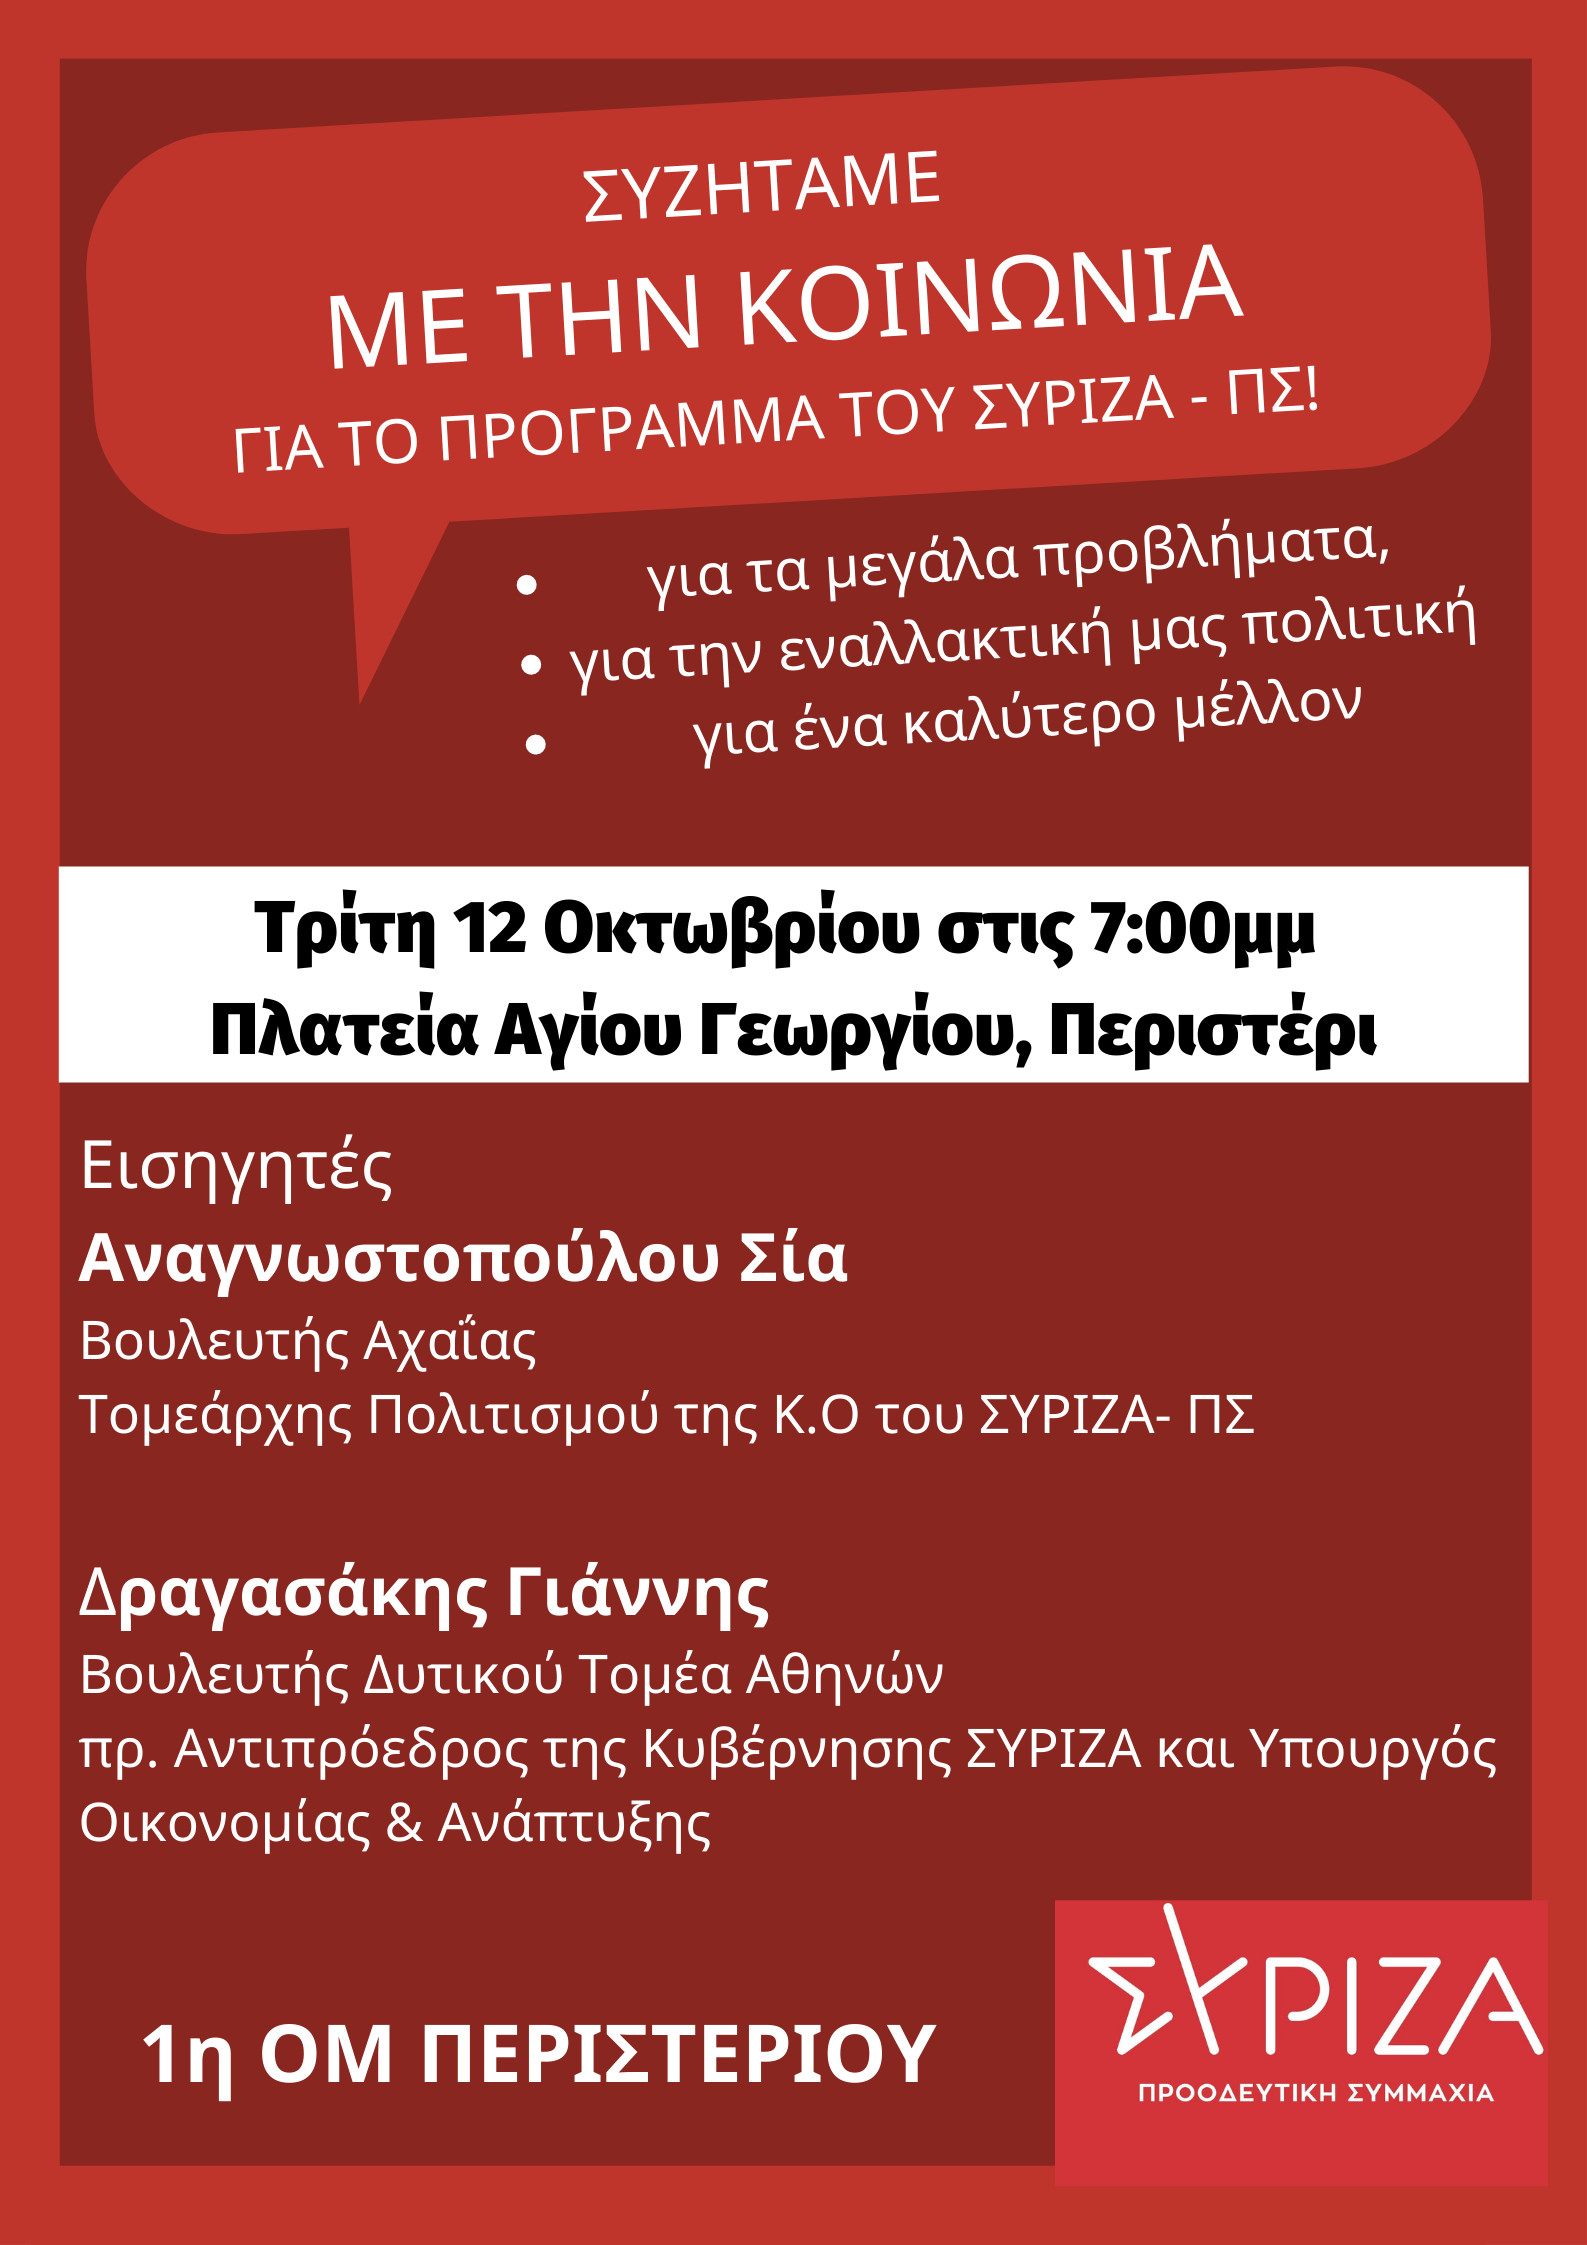 ΑΝΑΒΑΛΛΕΤΑΙ - Ανοιχτή πολιτική εκδήλωση της 1ης ΟΜ ΣΥΡΙΖΑ Προοδευτική Συμμαχία Περιστερίου στην πλατεία Αγίου Γεωργίου